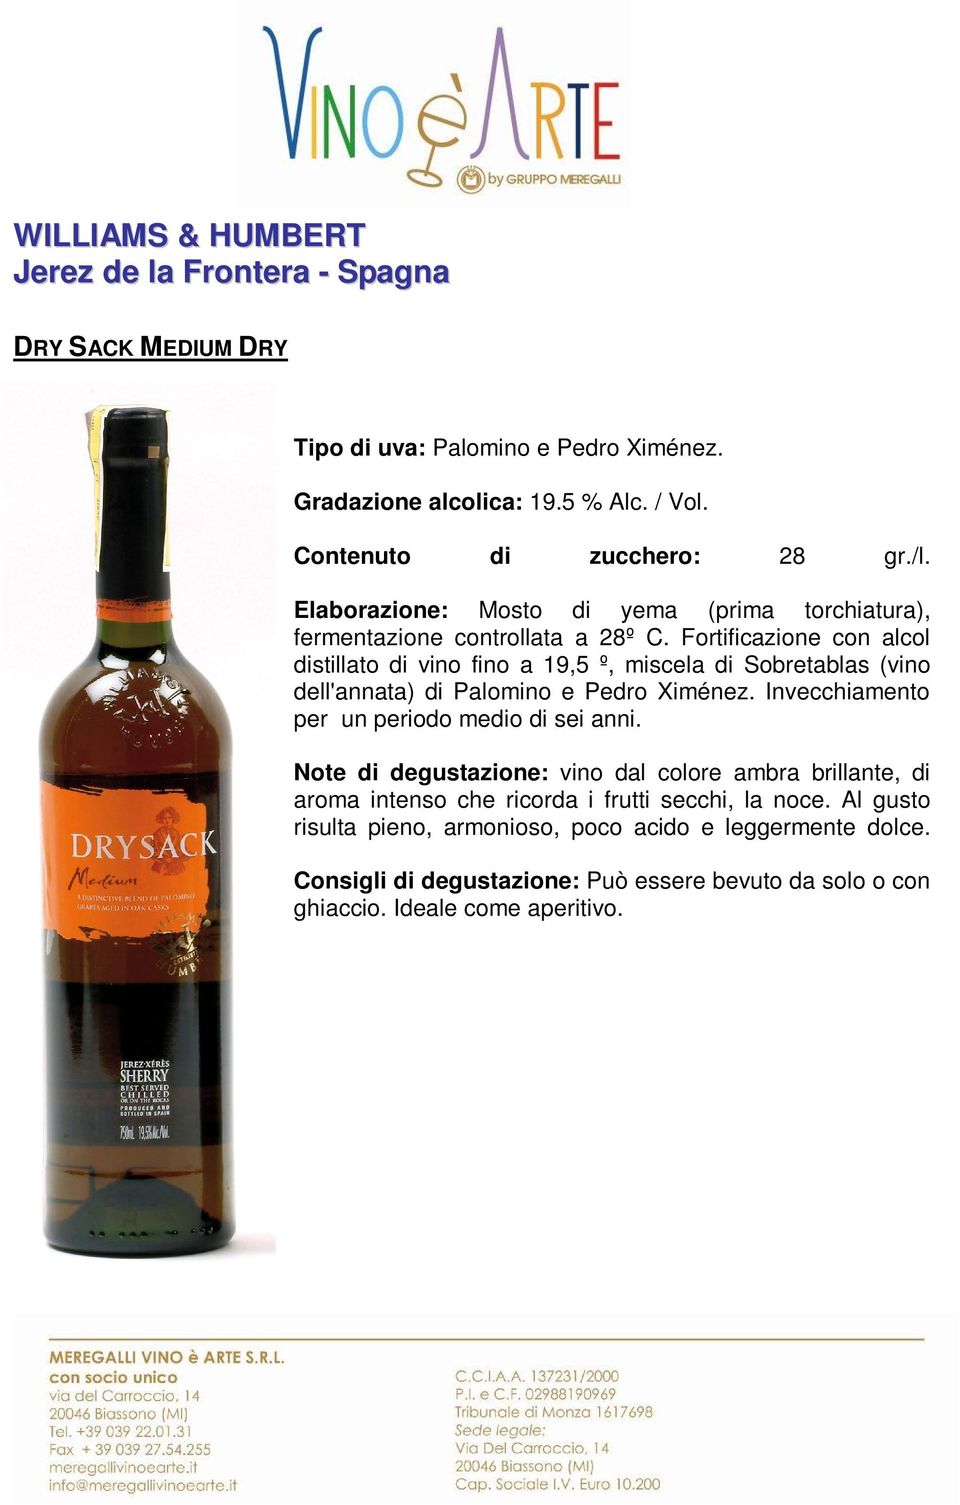 Fortificazione con alcol distillato di vino fino a 19,5 º, miscela di Sobretablas (vino dell'annata) di Palomino e Pedro Ximénez.